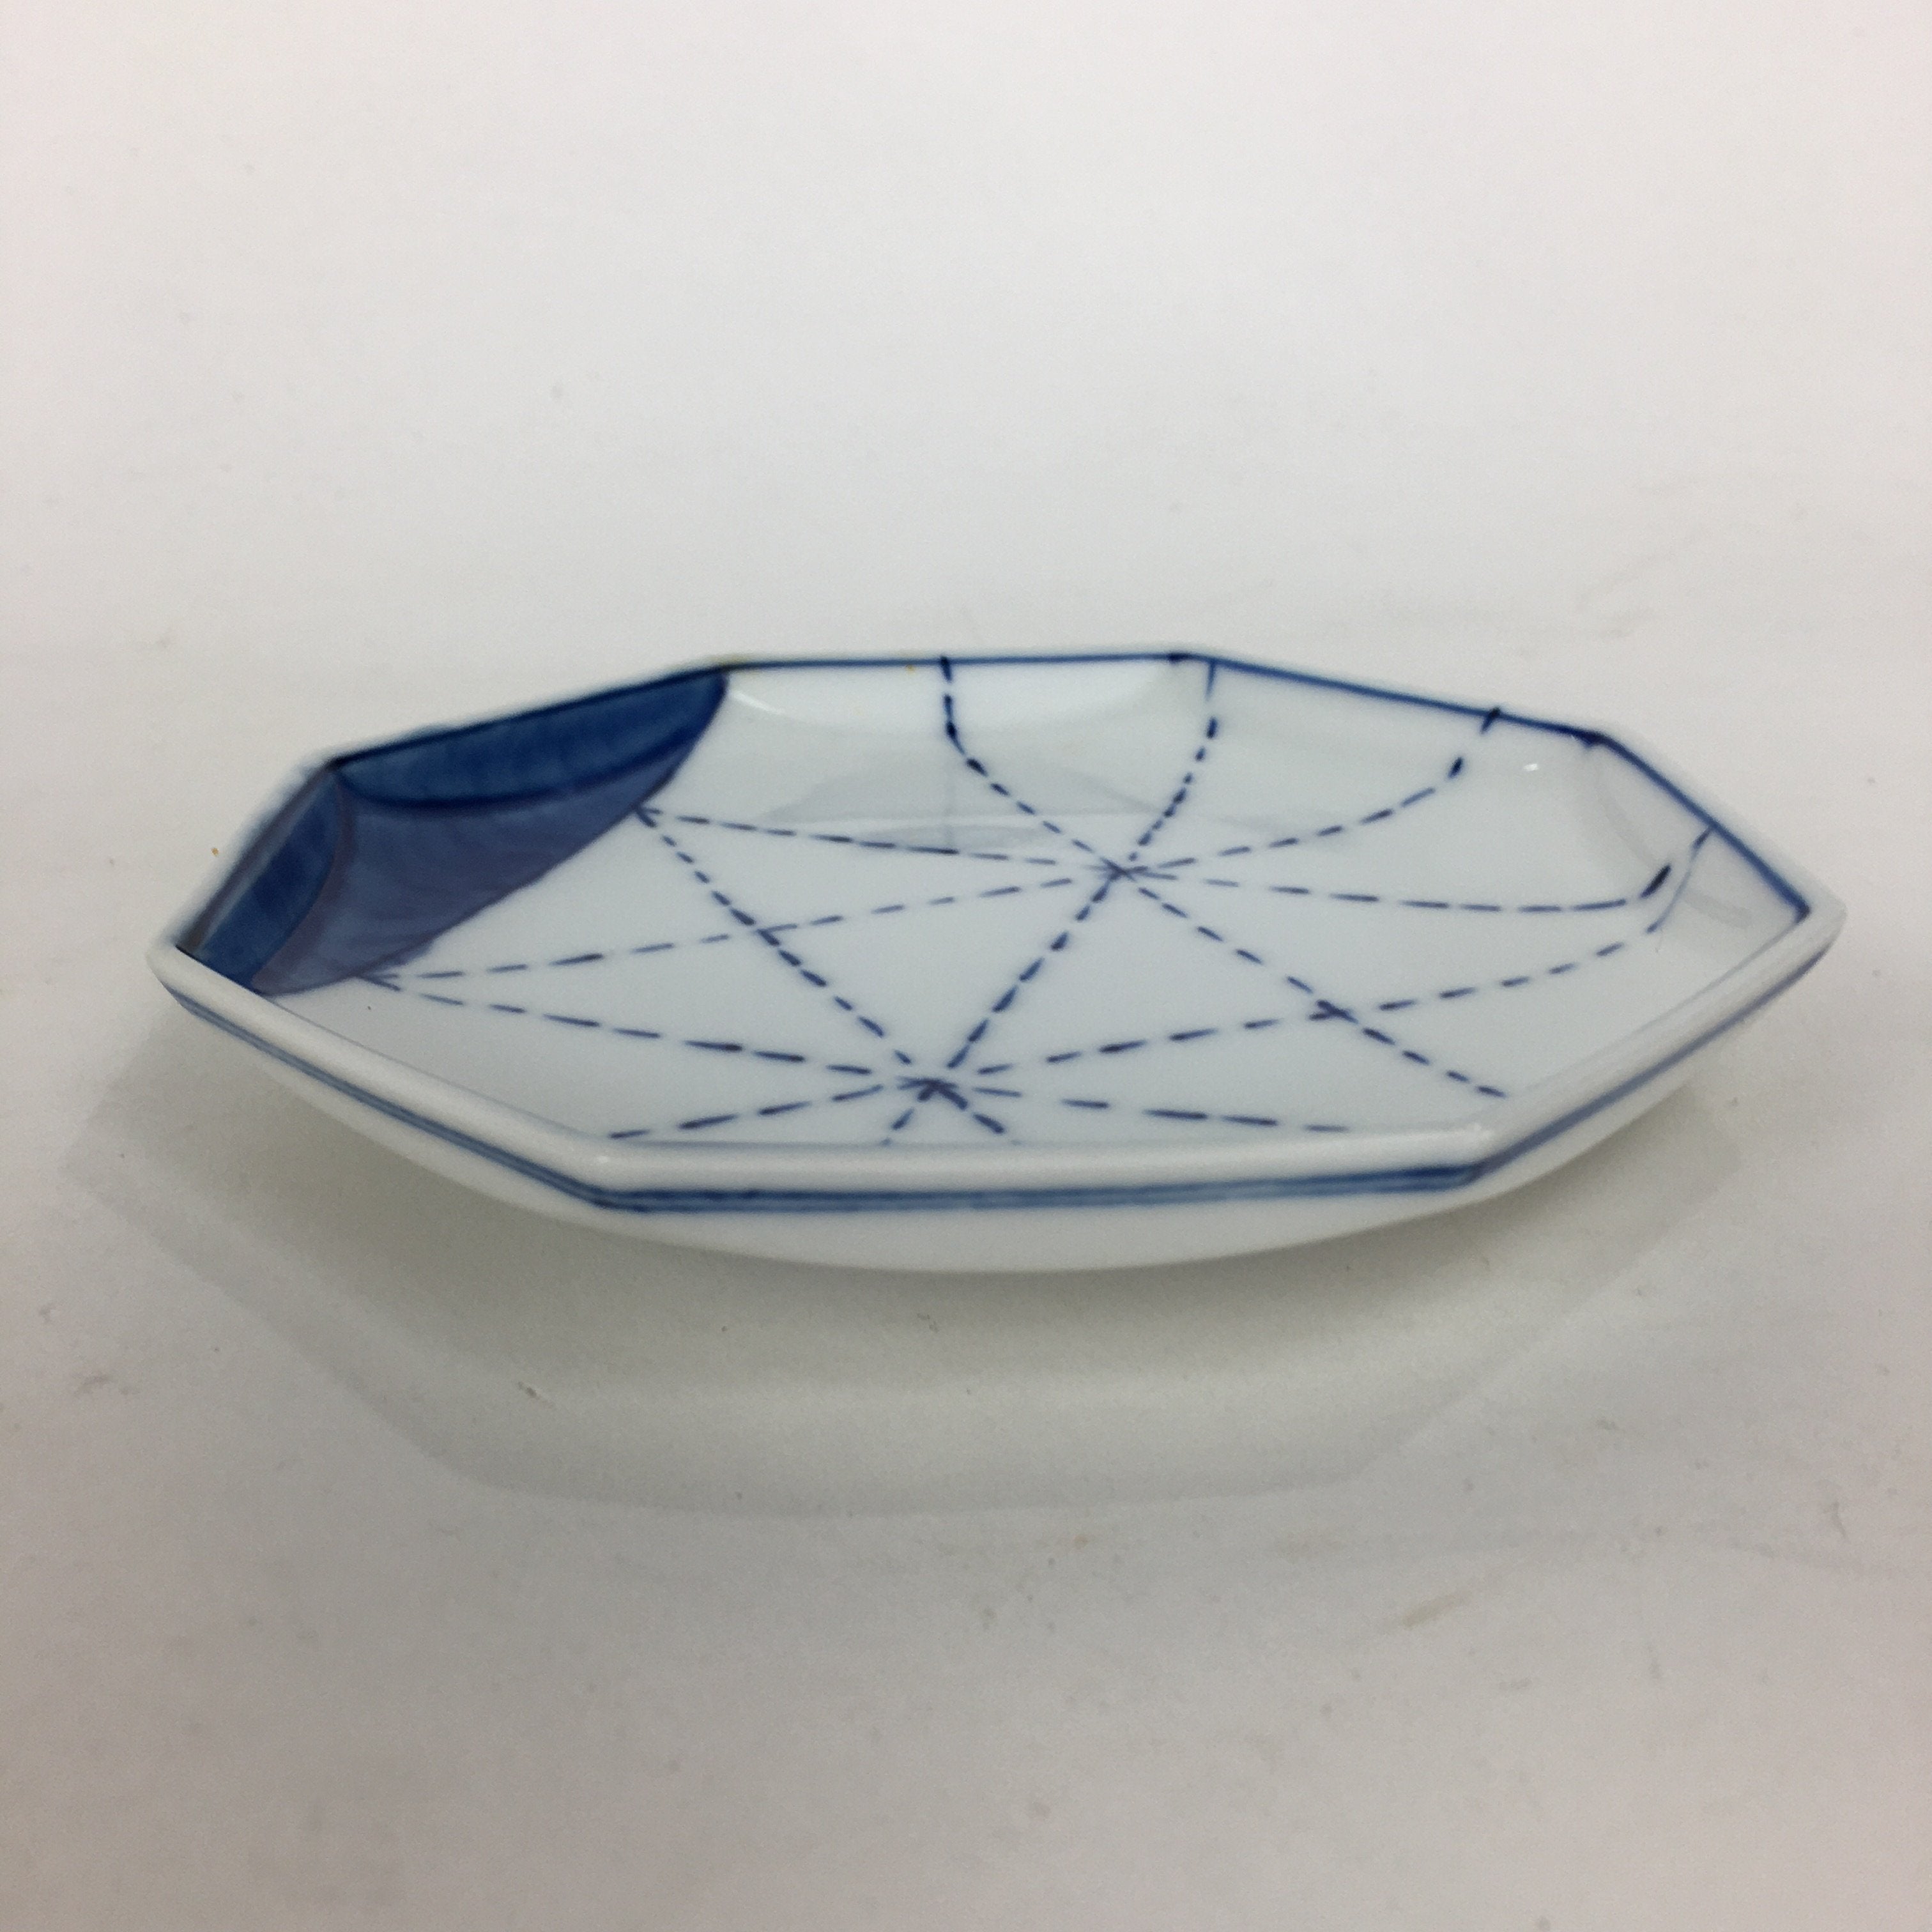 Japanese Porcelain Mino Ware Small Plate Kozara Vtg Blue Sometsuke Octagon PP666